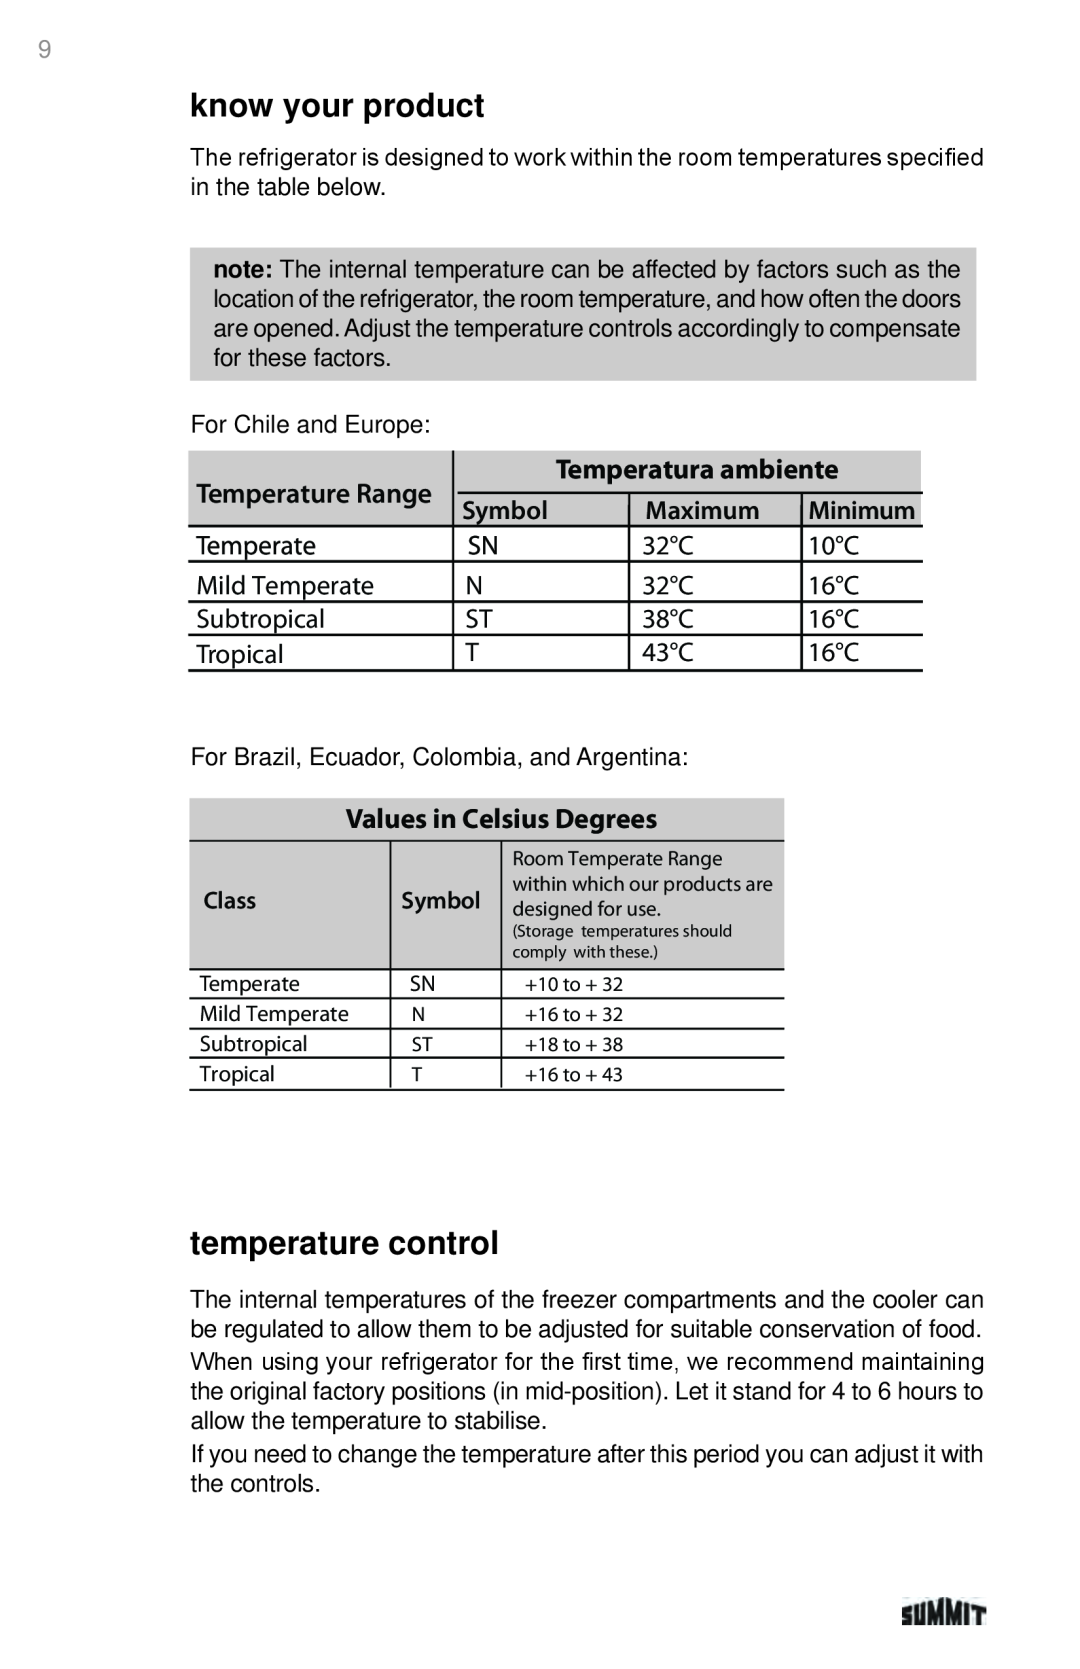 Summit 225D6783P011 manual know your product, temperature control, Temperatura ambiente, Values in Celsius Degrees, Maximum 